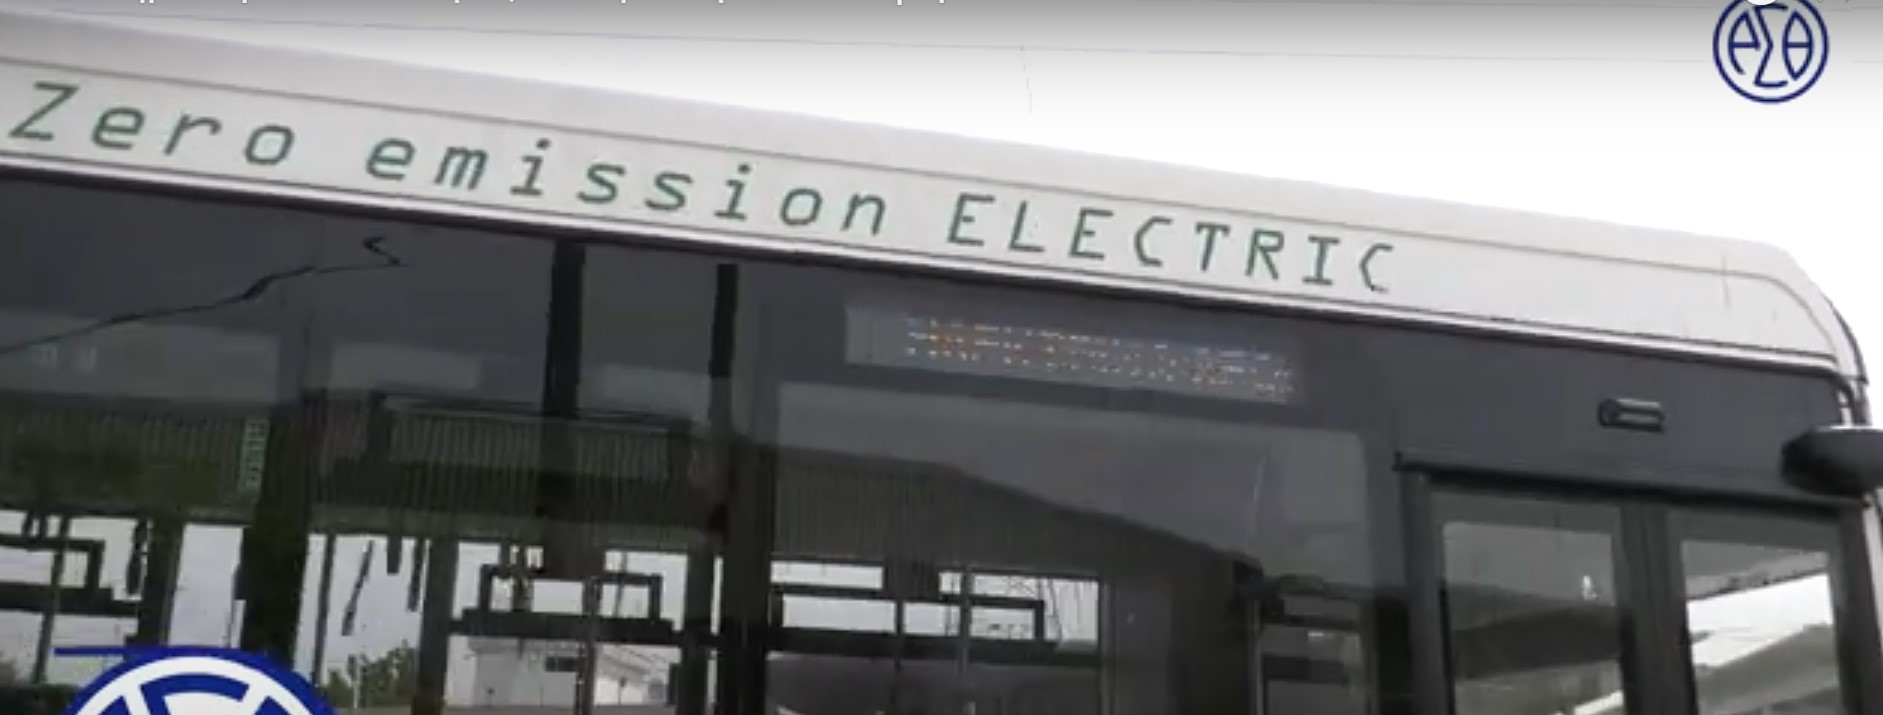 ΟΑΣΘ: Στις γραμμές του Ευόσμου και της Πολίχνης θα κυκλοφορήσουν τα πρώτα ηλεκτρικά λεωφορεία (video)